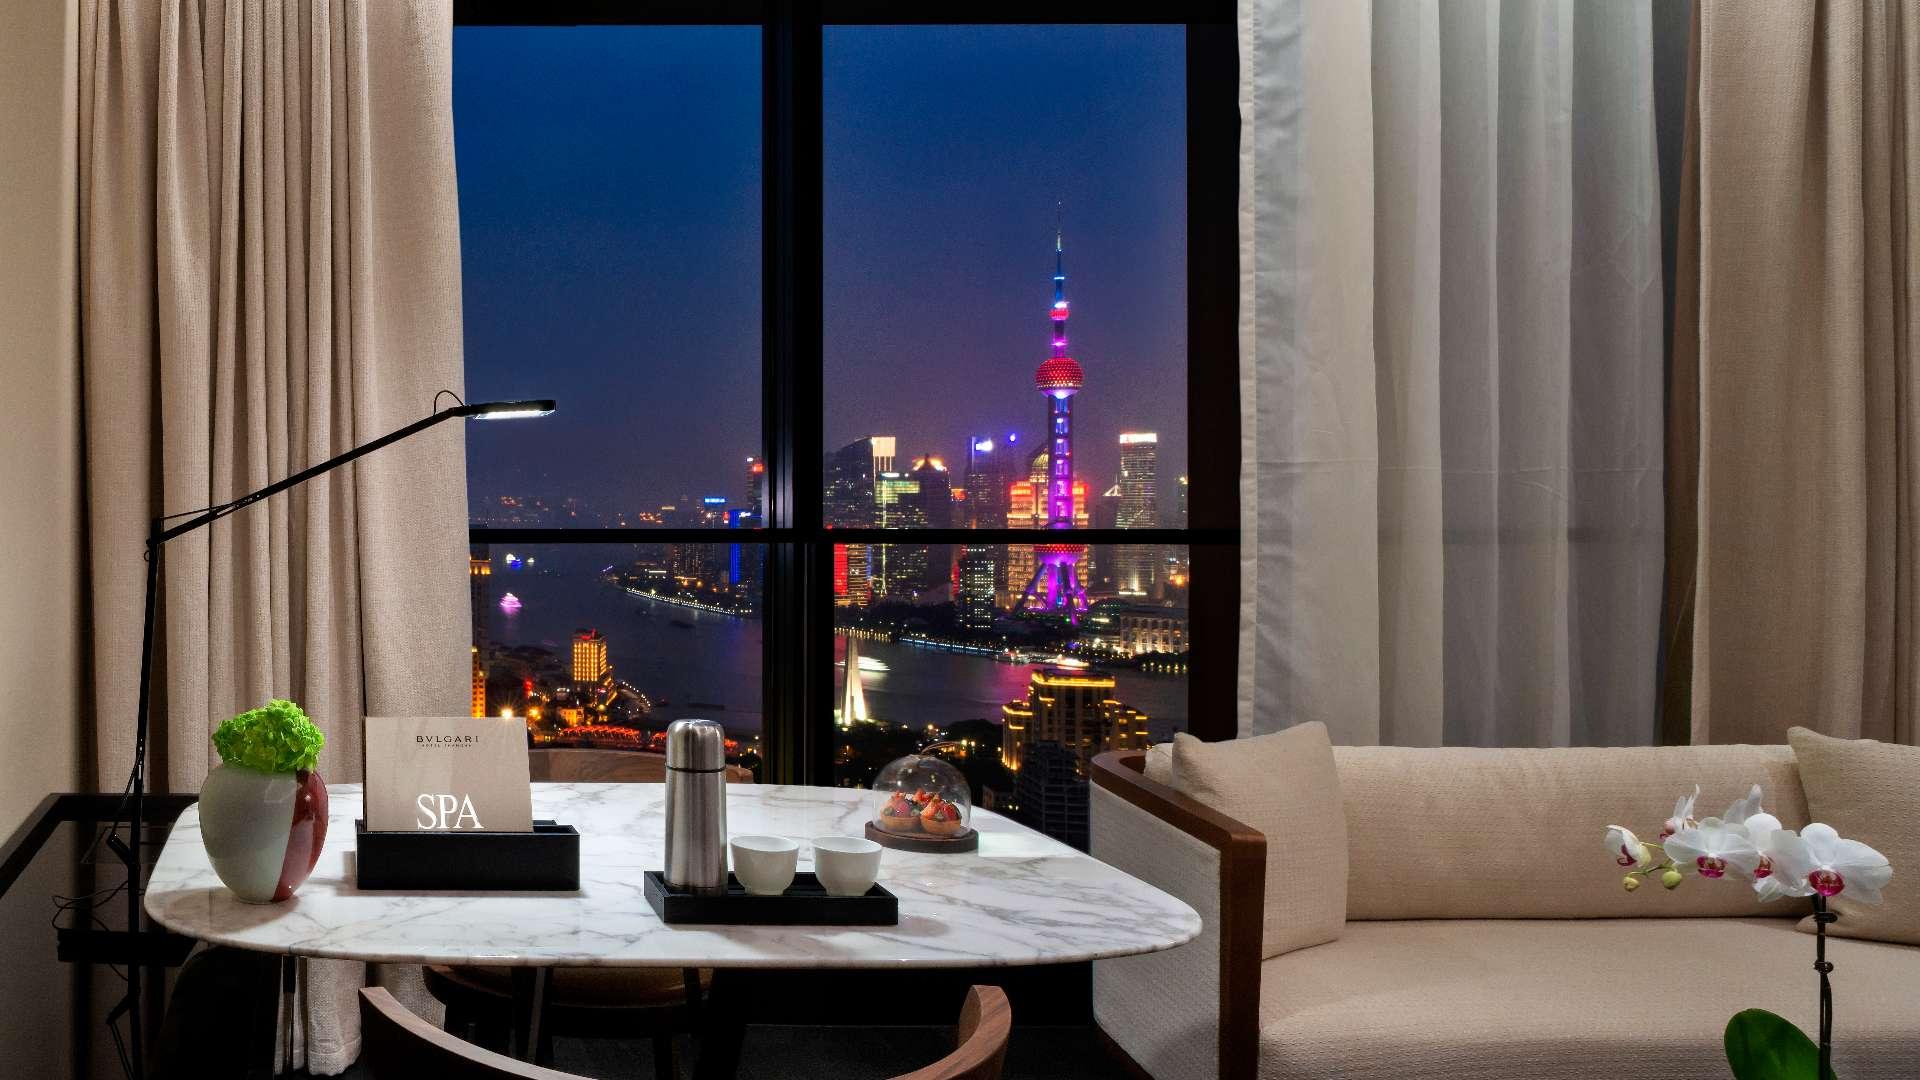 【意大利設計x中國傳奇】上海BVLGARI酒店  融合中西文化輝煌